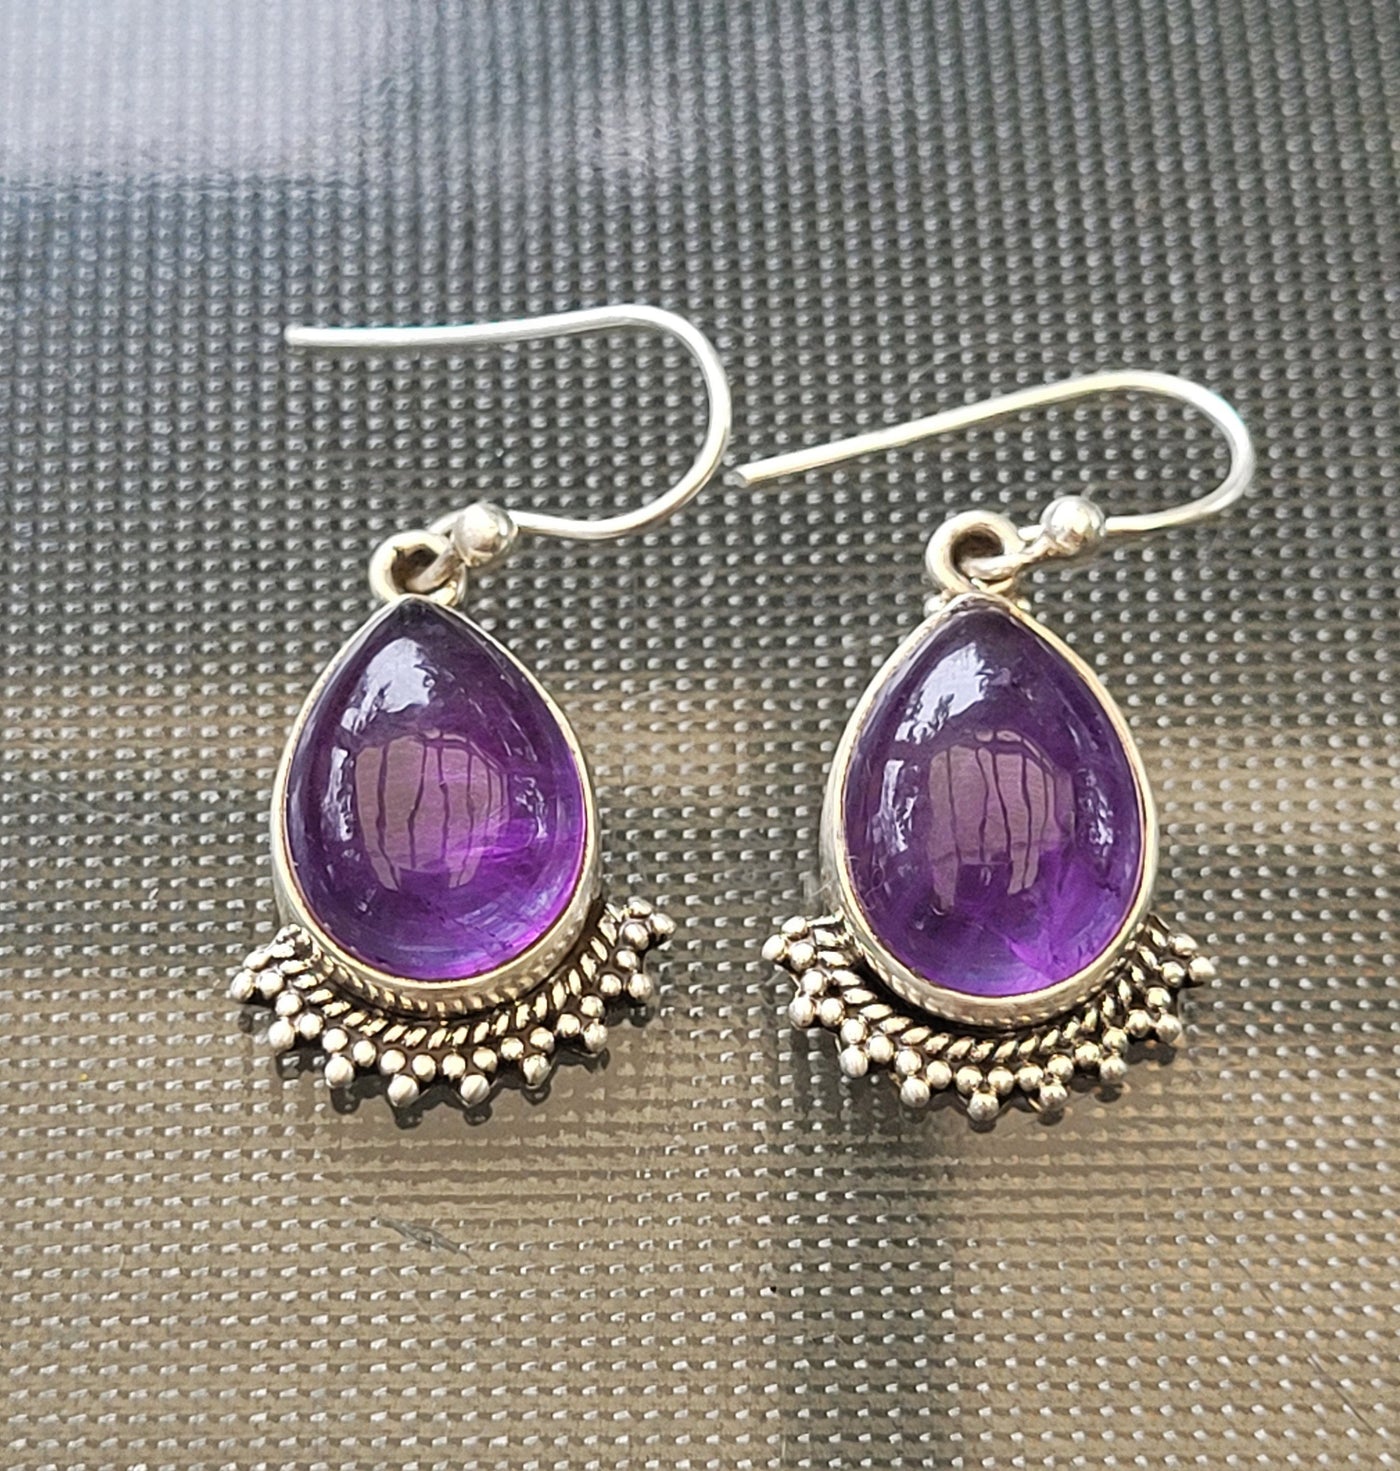 Buy Purple Amethyst 925 Silver Oval Shape Hook Earrings Online in India -  Etsy | Silver earrings uk, Online earrings, Etsy earrings